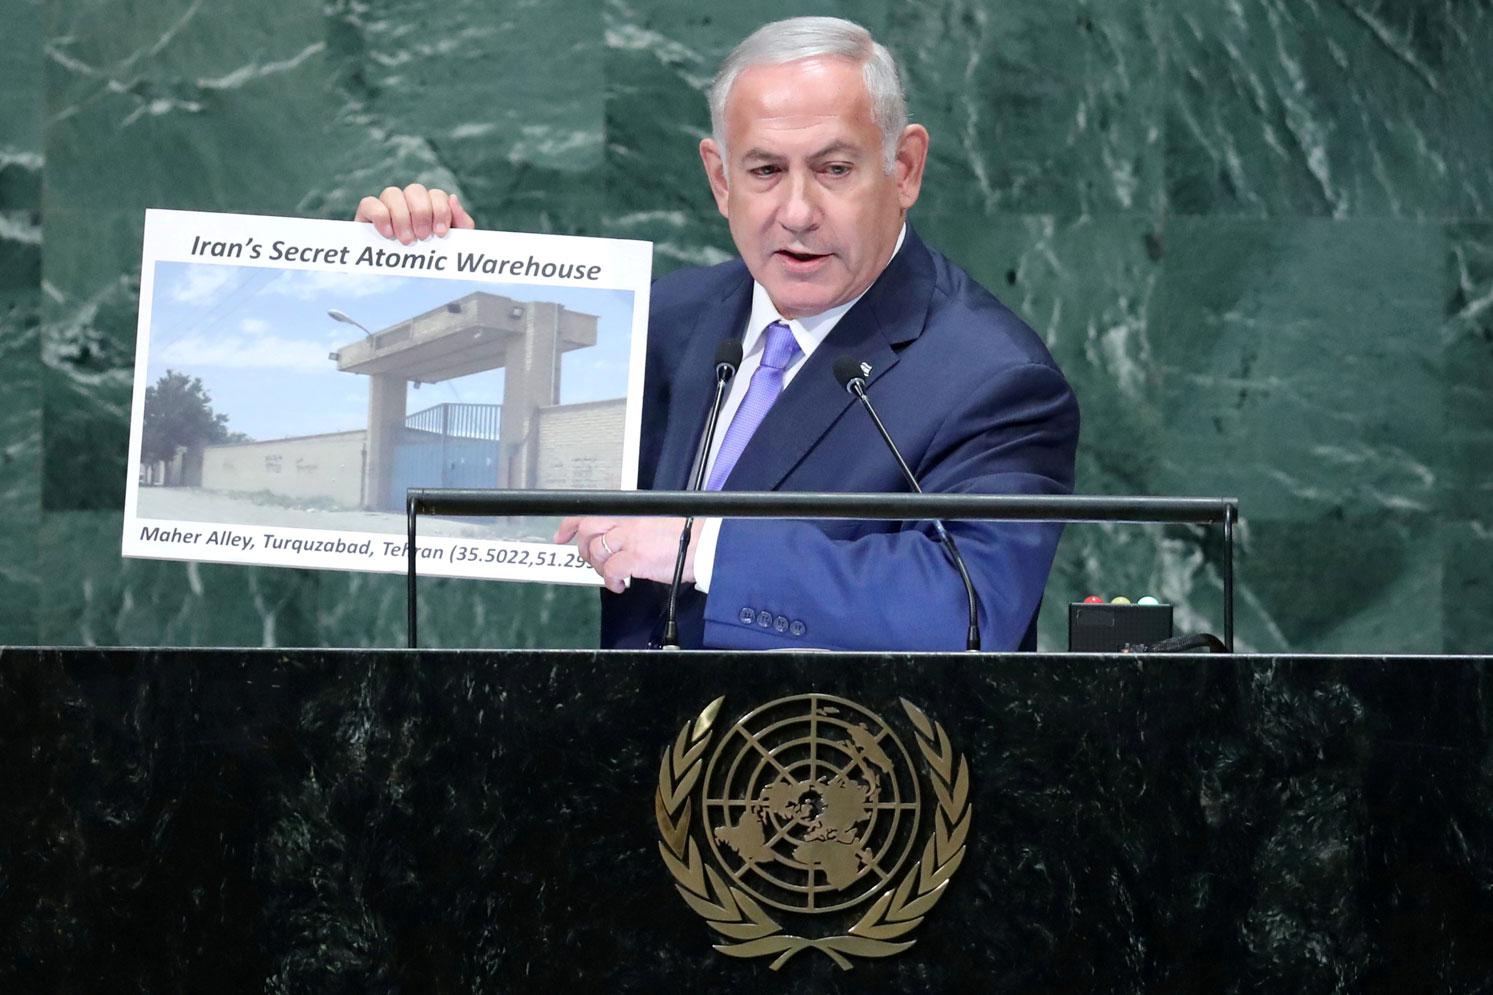 رئيس الوزراء الاسرائيلي يعرض صورة للموقع الذري الإيراني السري